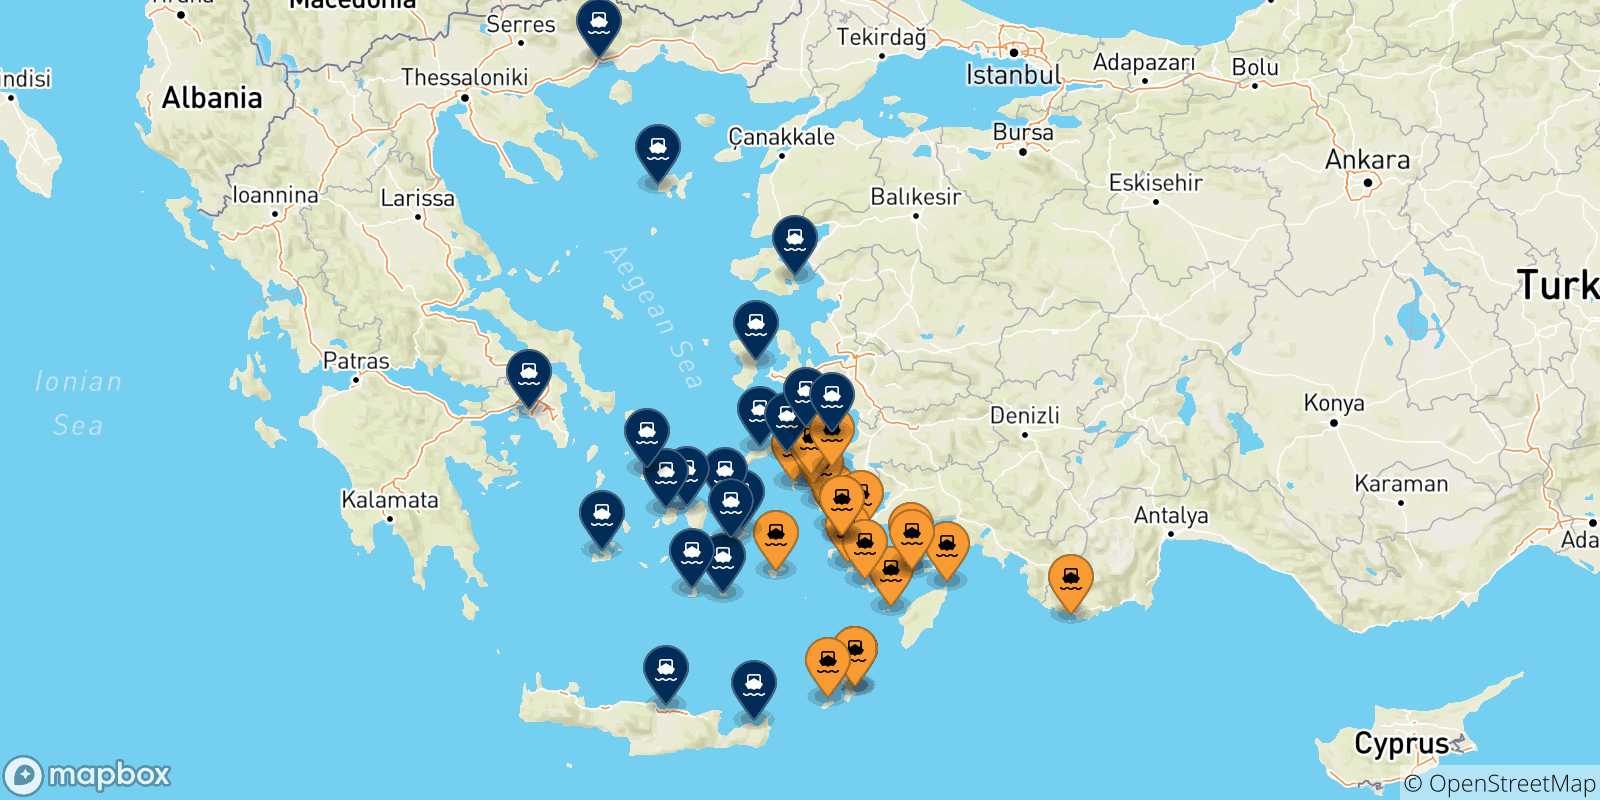 Mappa delle possibili rotte tra le Isole Dodecaneso e la Grecia